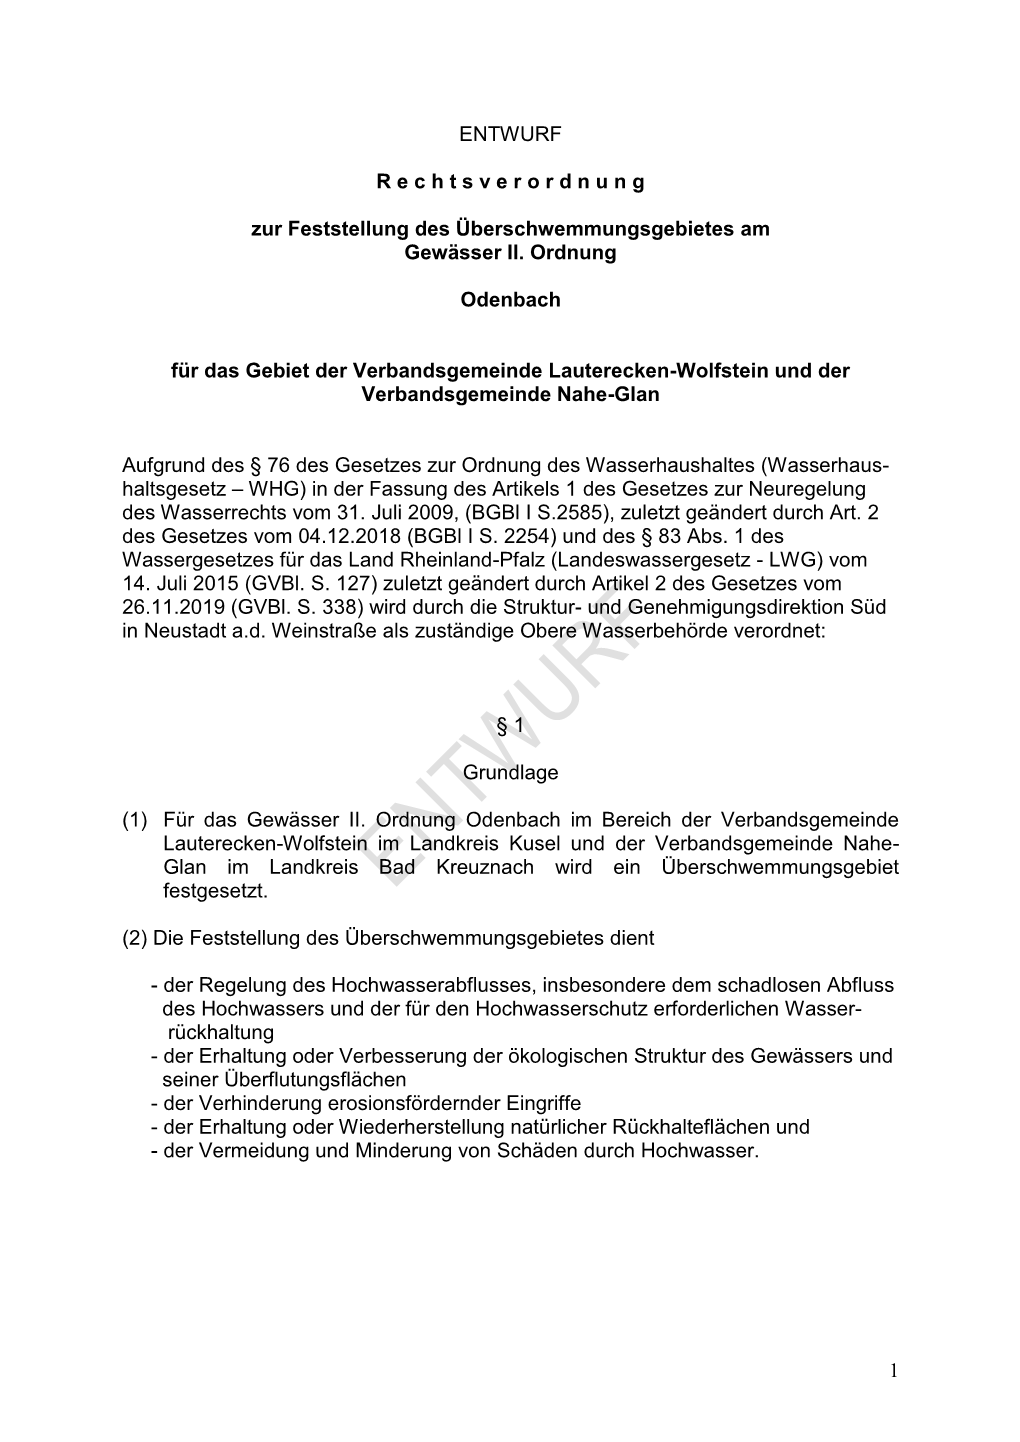 Entwurf Rechtsverordnung Überschwemmungsgebiet Odenbach